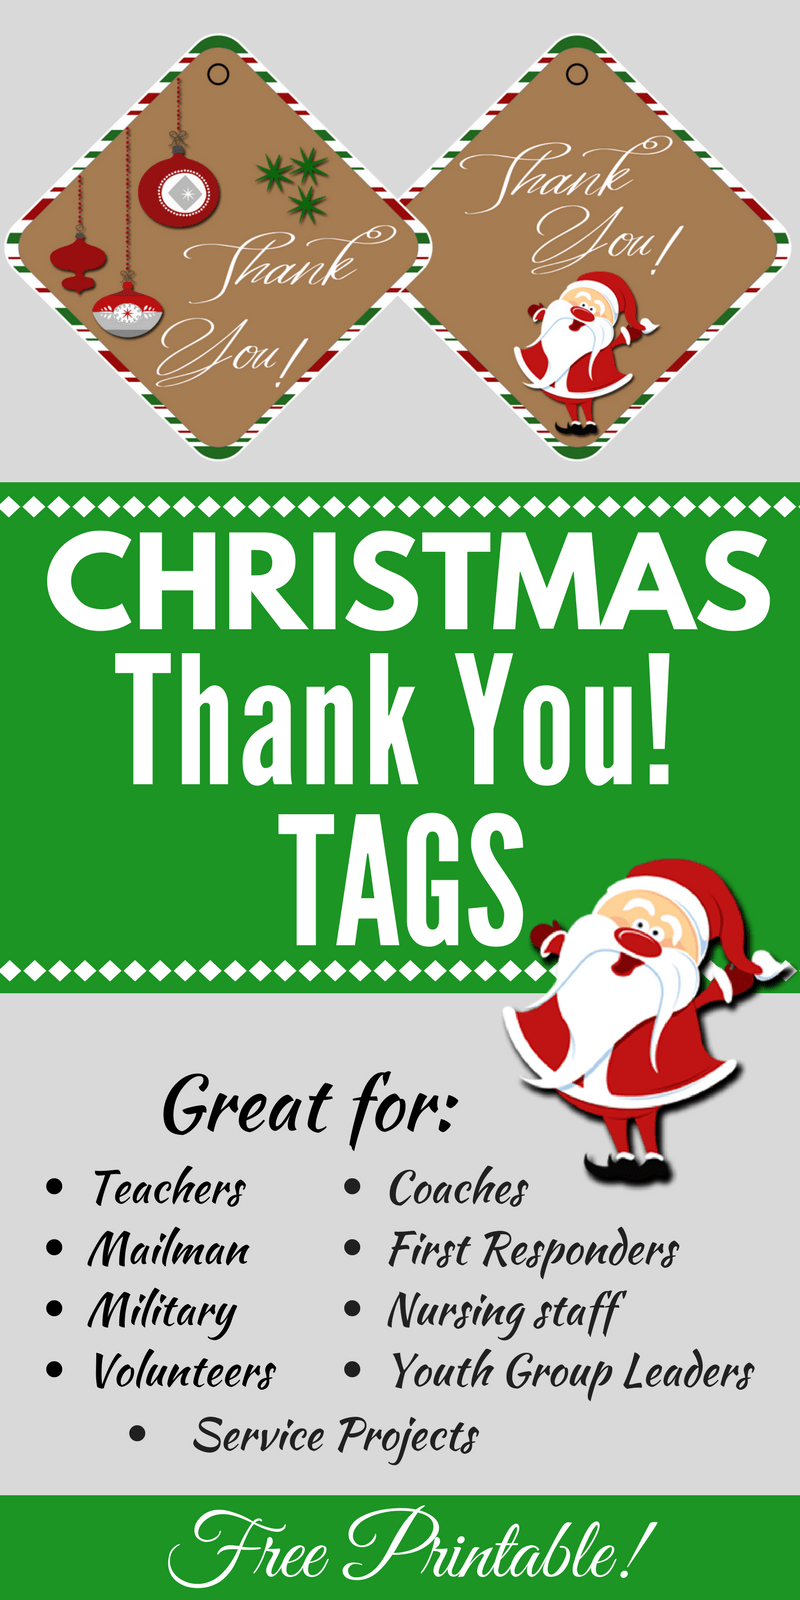 Christmas Thank You Tags Free Printable | Christmas - Food, Crafts - Free Printable Christmas Food Labels